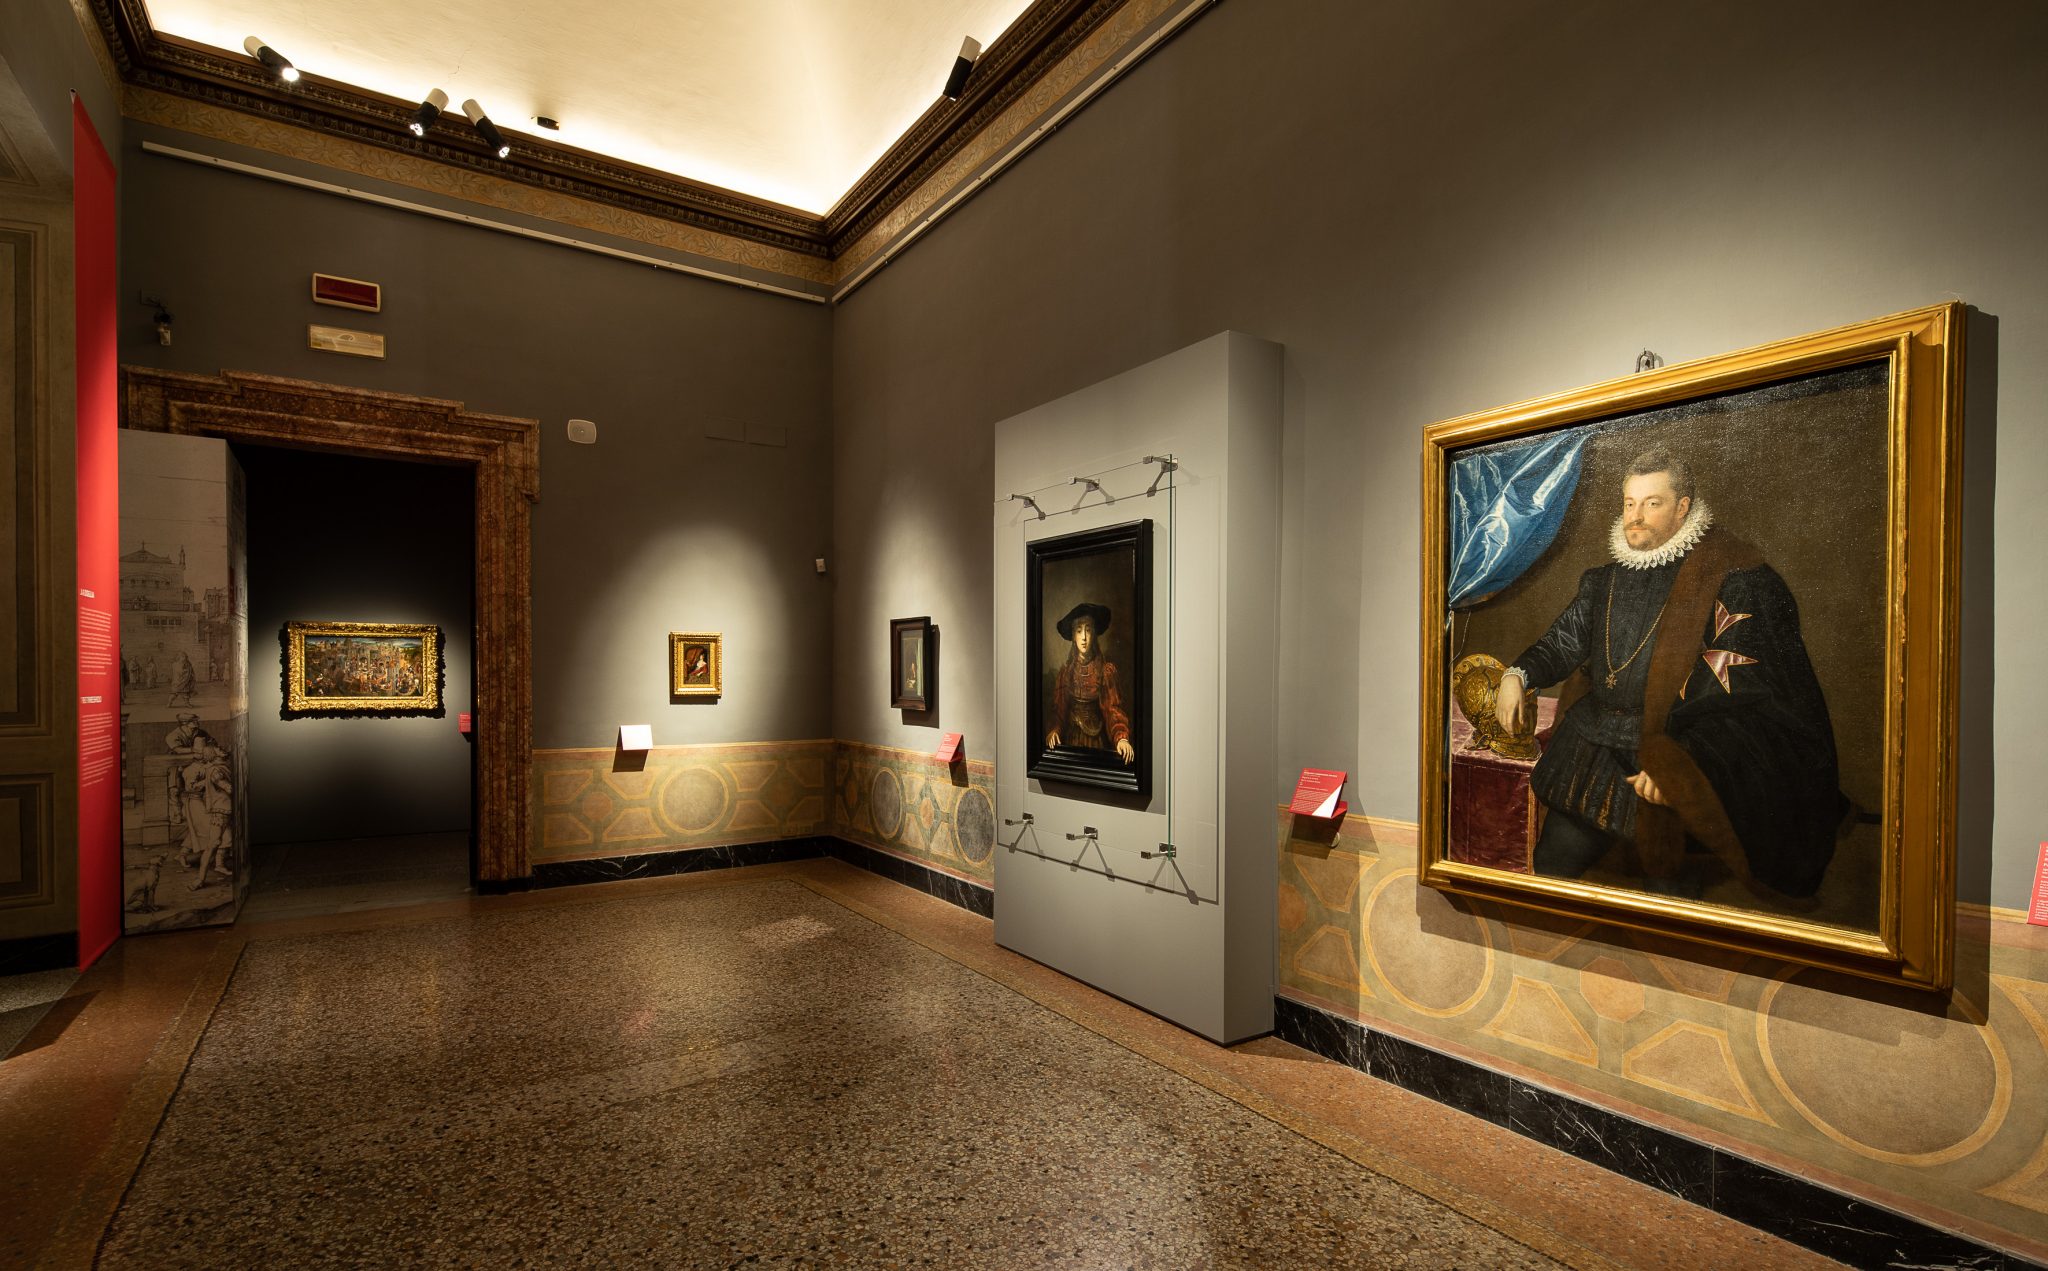 Lunedì 1° febbraio 2021 ha riaperto Palazzo Barberini, sede delle Gallerie Nazionali di Arte Antica